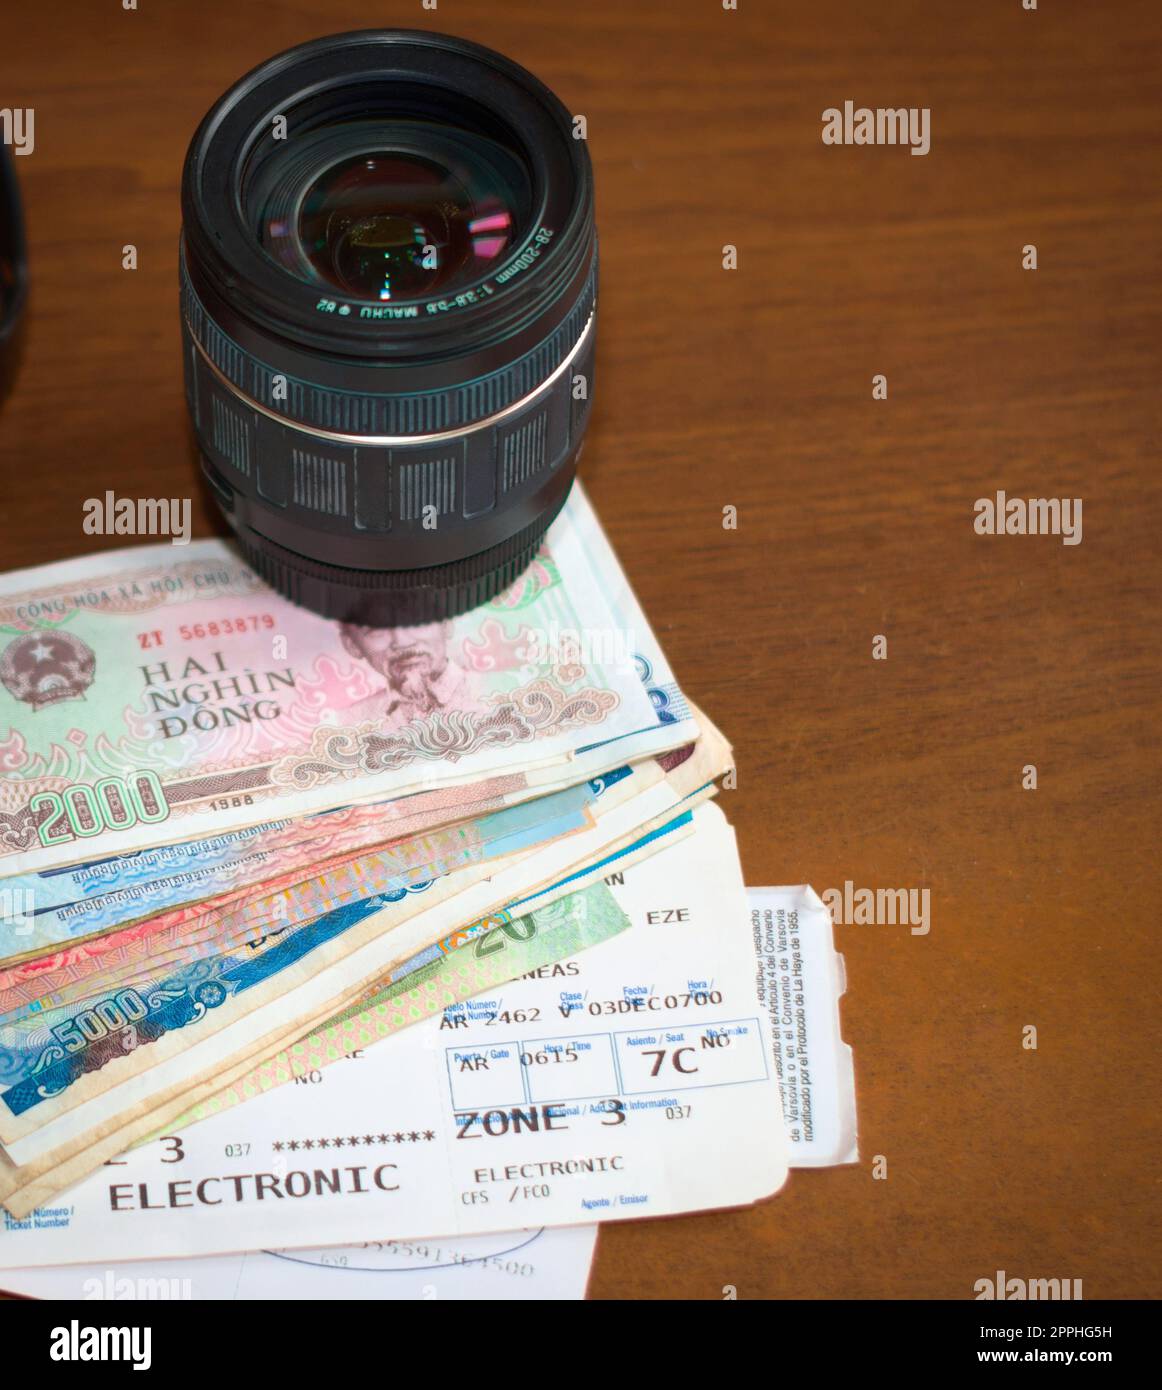 Kameraobjektiv, ausländisches Geld und Bordkarte für Flugzeuge auf einem Holztisch. Tourismus, Urlaub, Reisen Fotografie Ausrüstung. Stockfoto